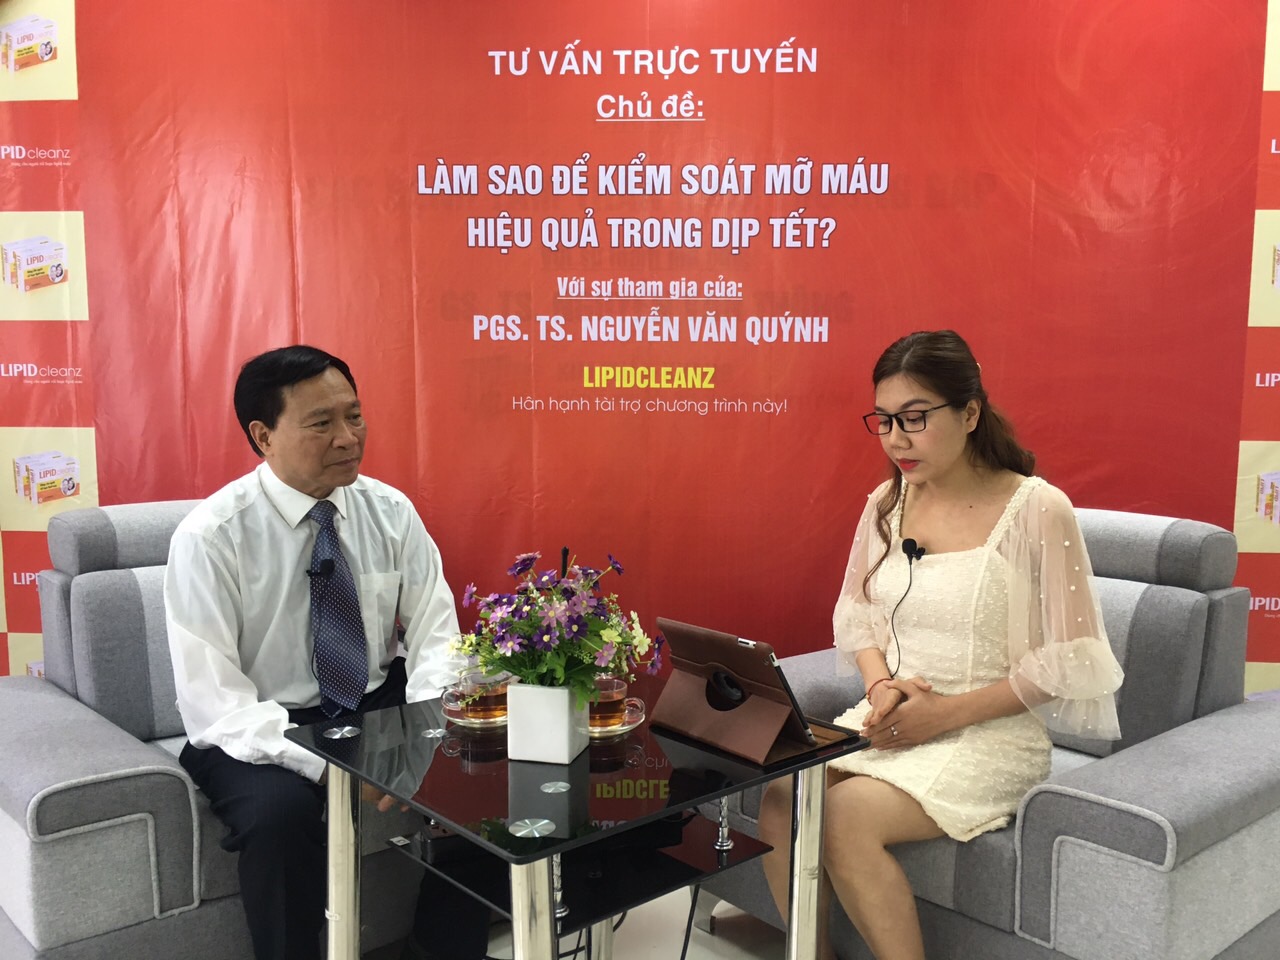 Giao lưu trực tuyến cùng chuyên gia Nguyễn Văn Quýnh